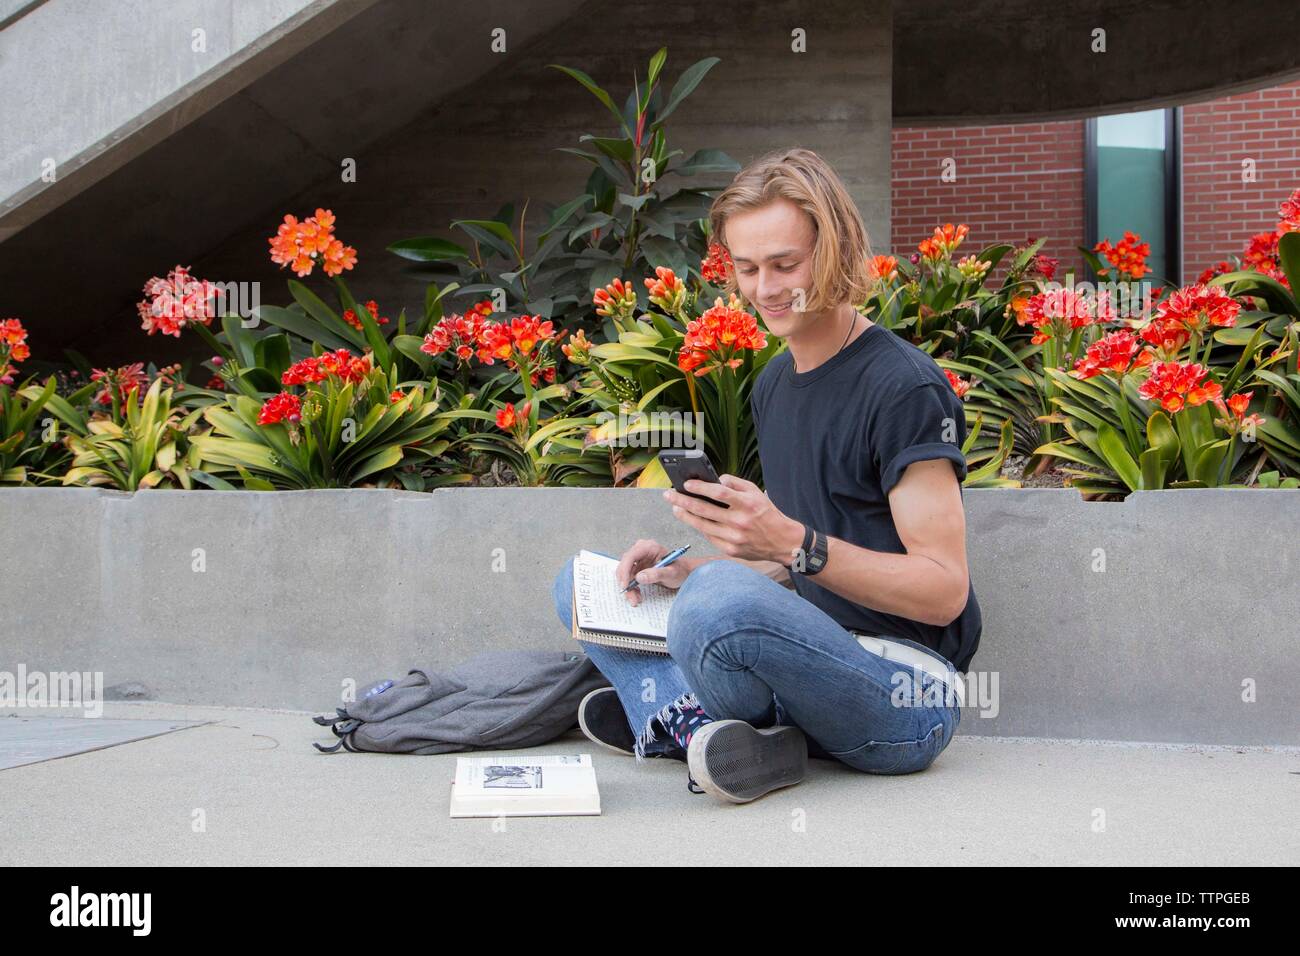 Male student sitting de fleurs avec des livres, smiling at text message Banque D'Images